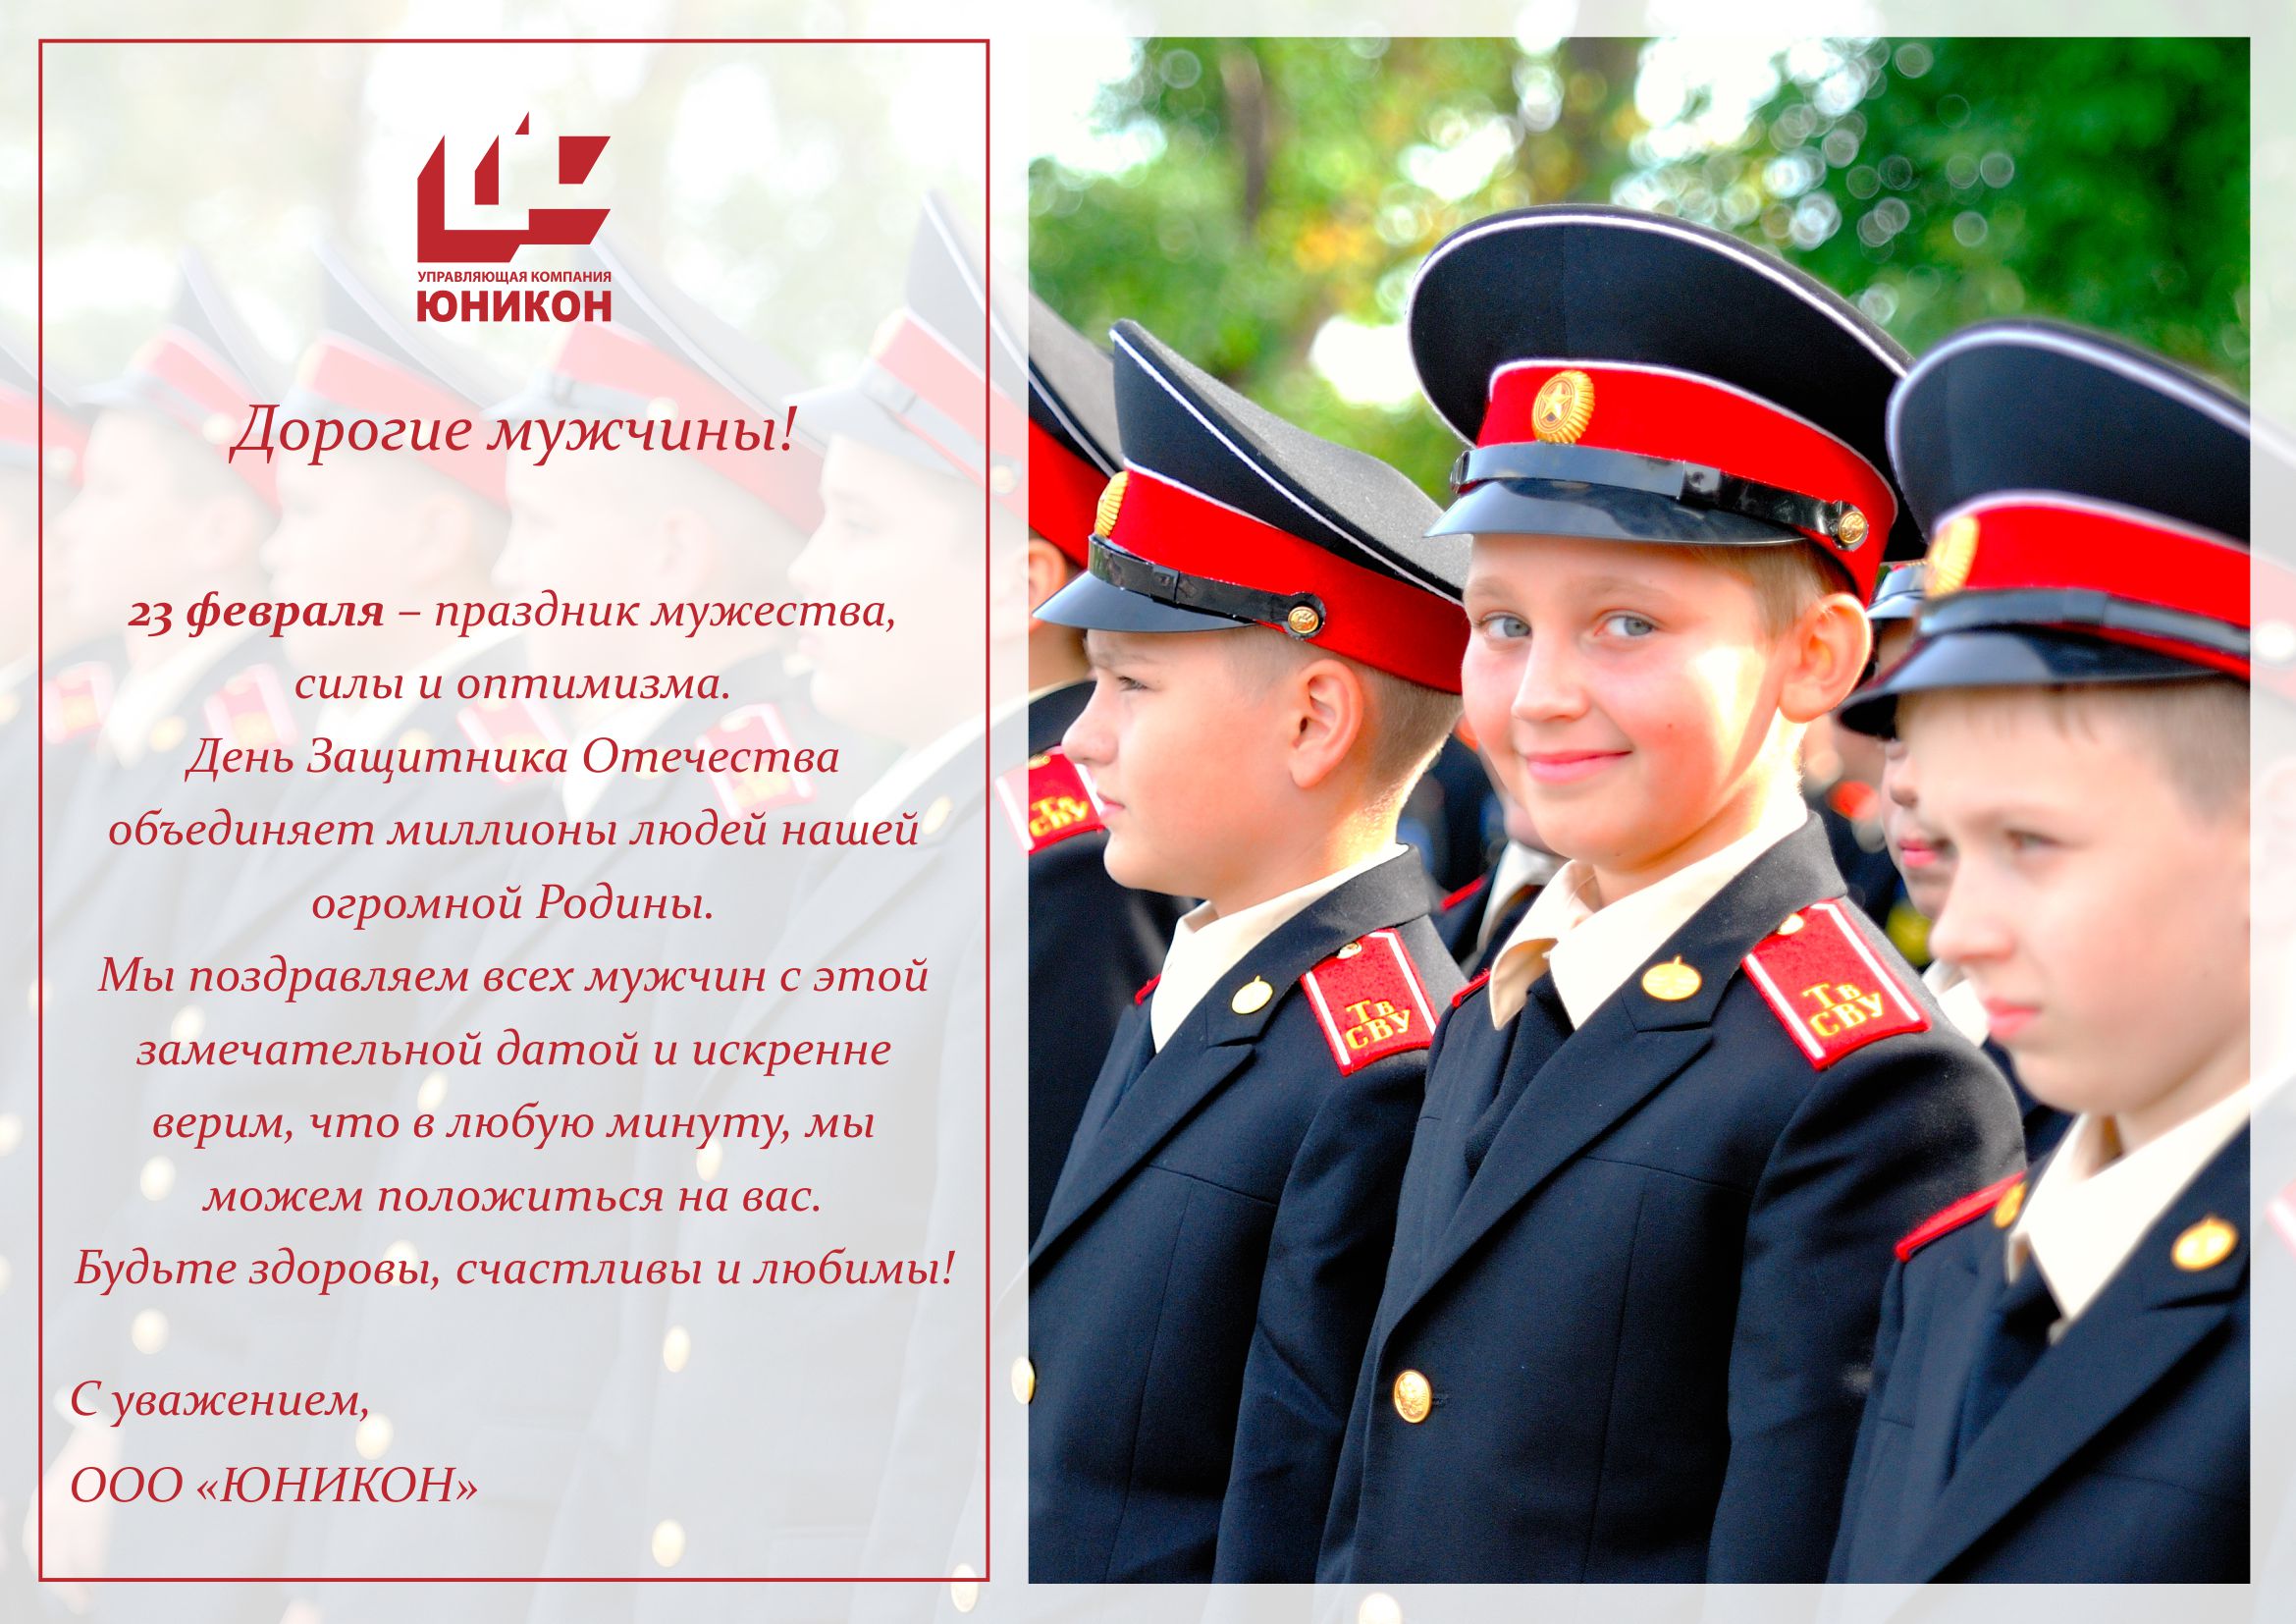 Управляющая компания "ЮНИКОН" поздравляет всех мужчин с Днем Защитника Отечества!